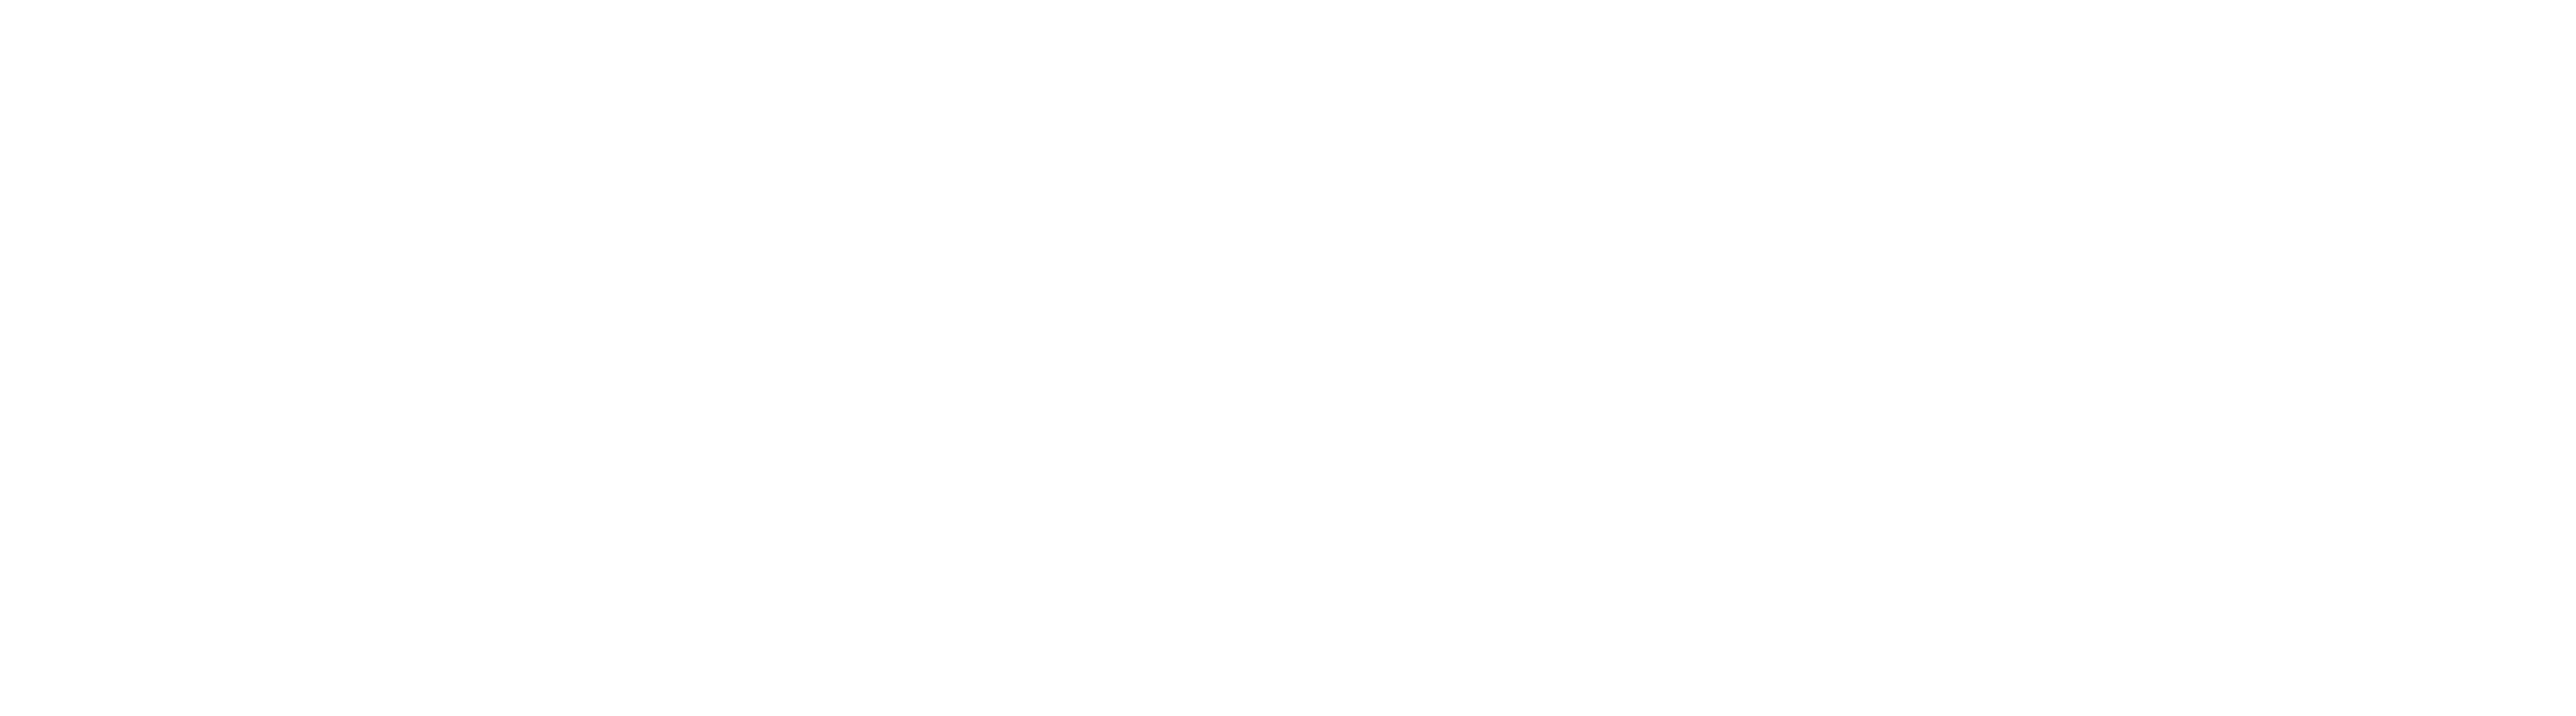 Finançat per la Unió Europea - NextGeneration